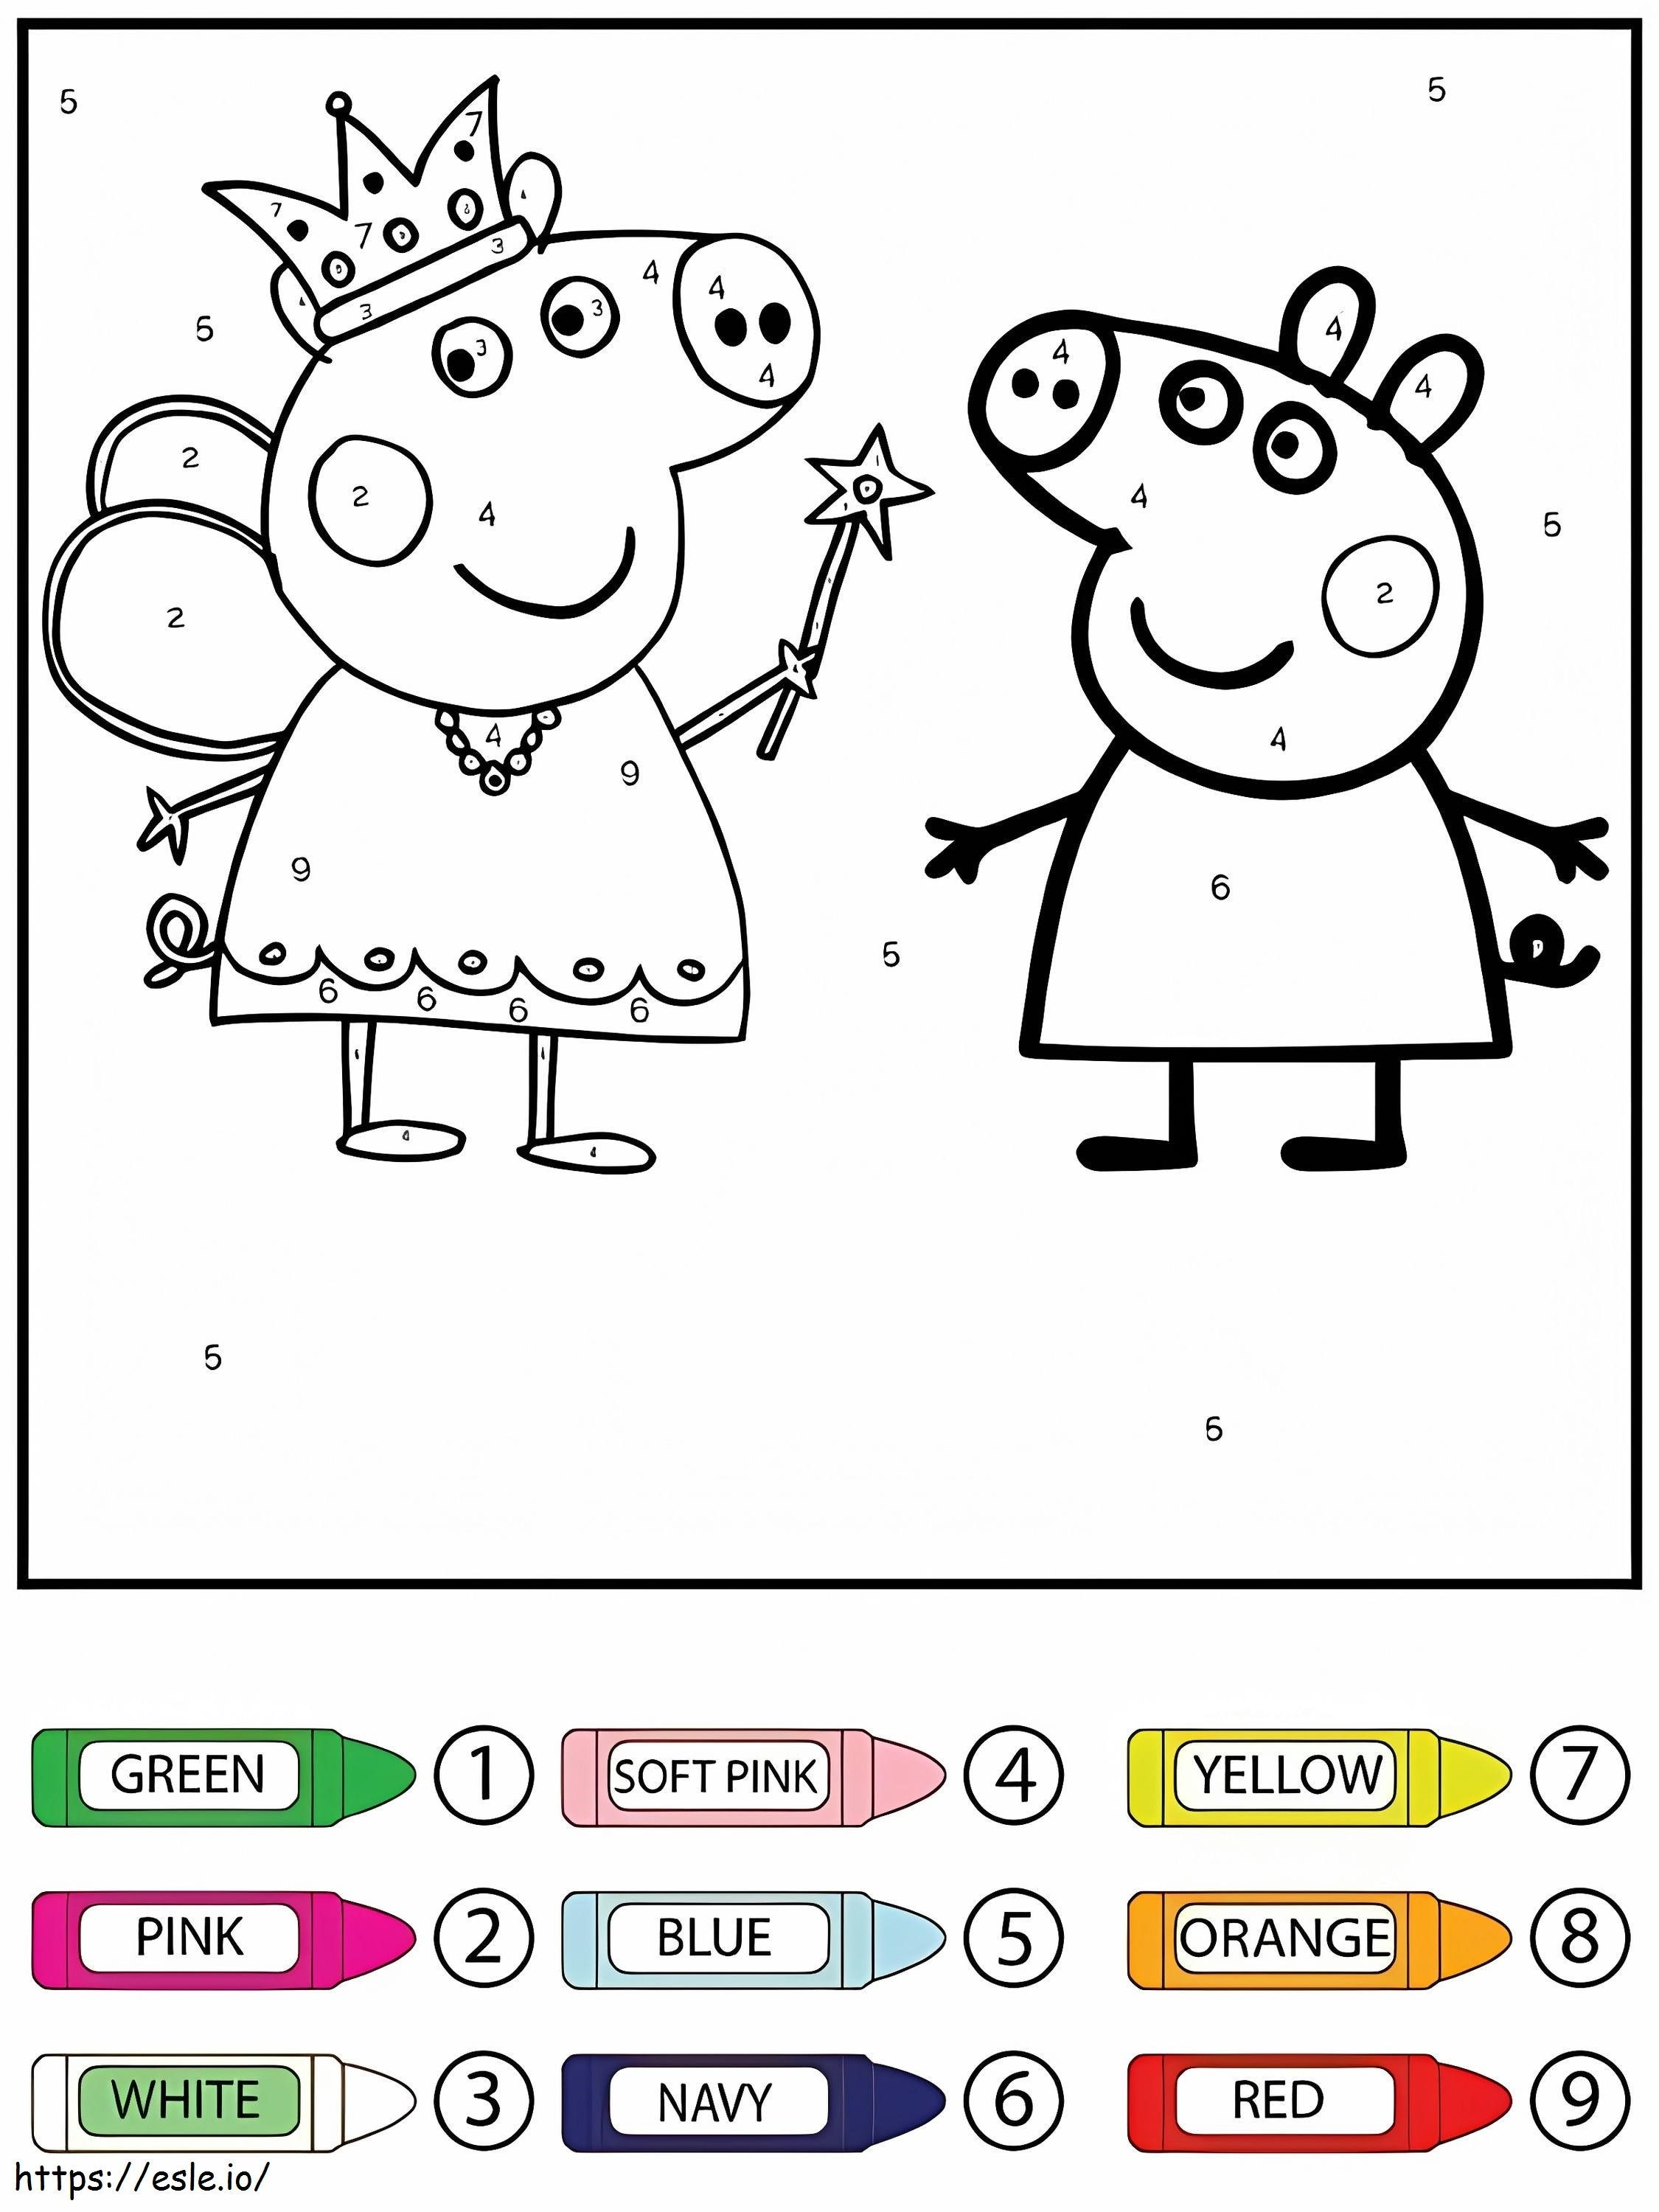 Rainha feliz e Peppa Pig coloridas por número para colorir